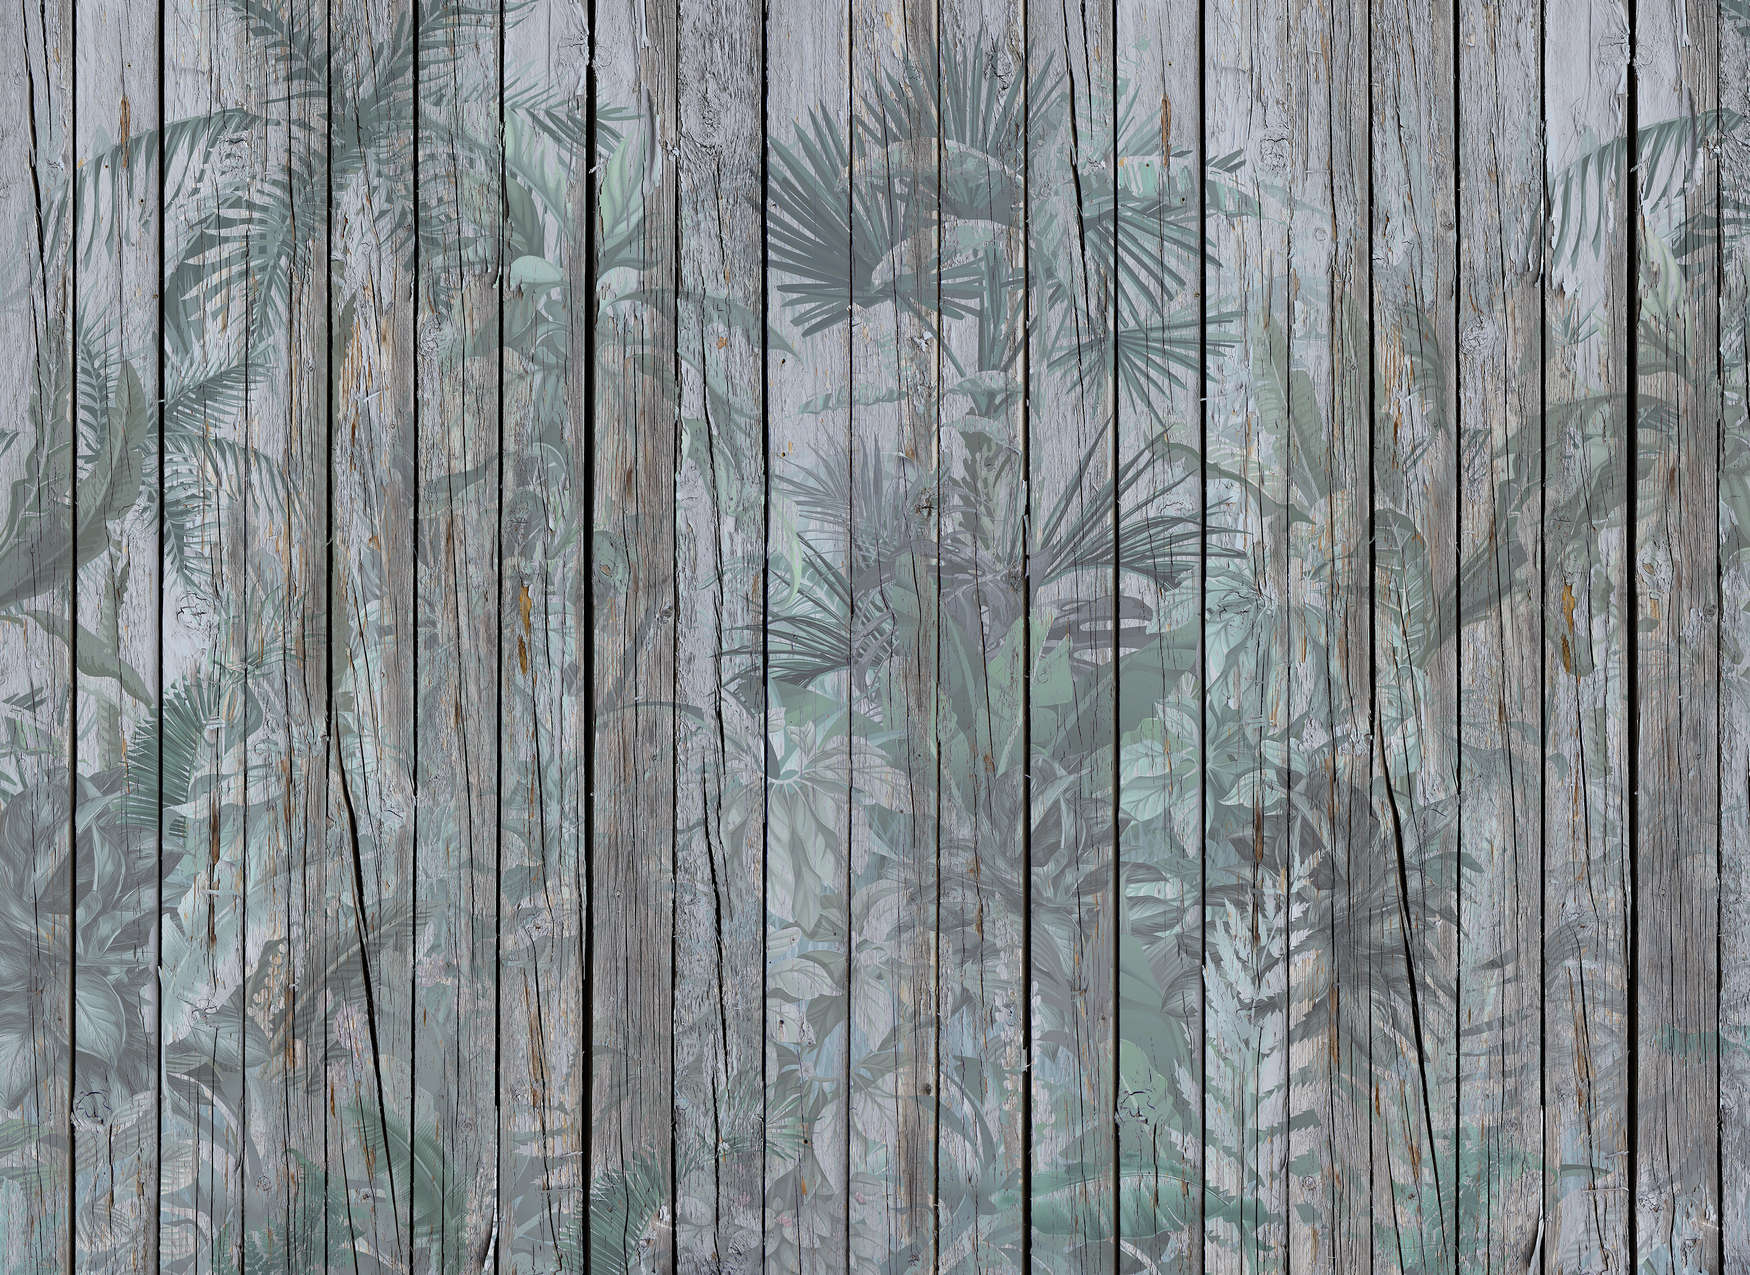             Mural de madera con plantas de la selva - Marrón, Verde
        